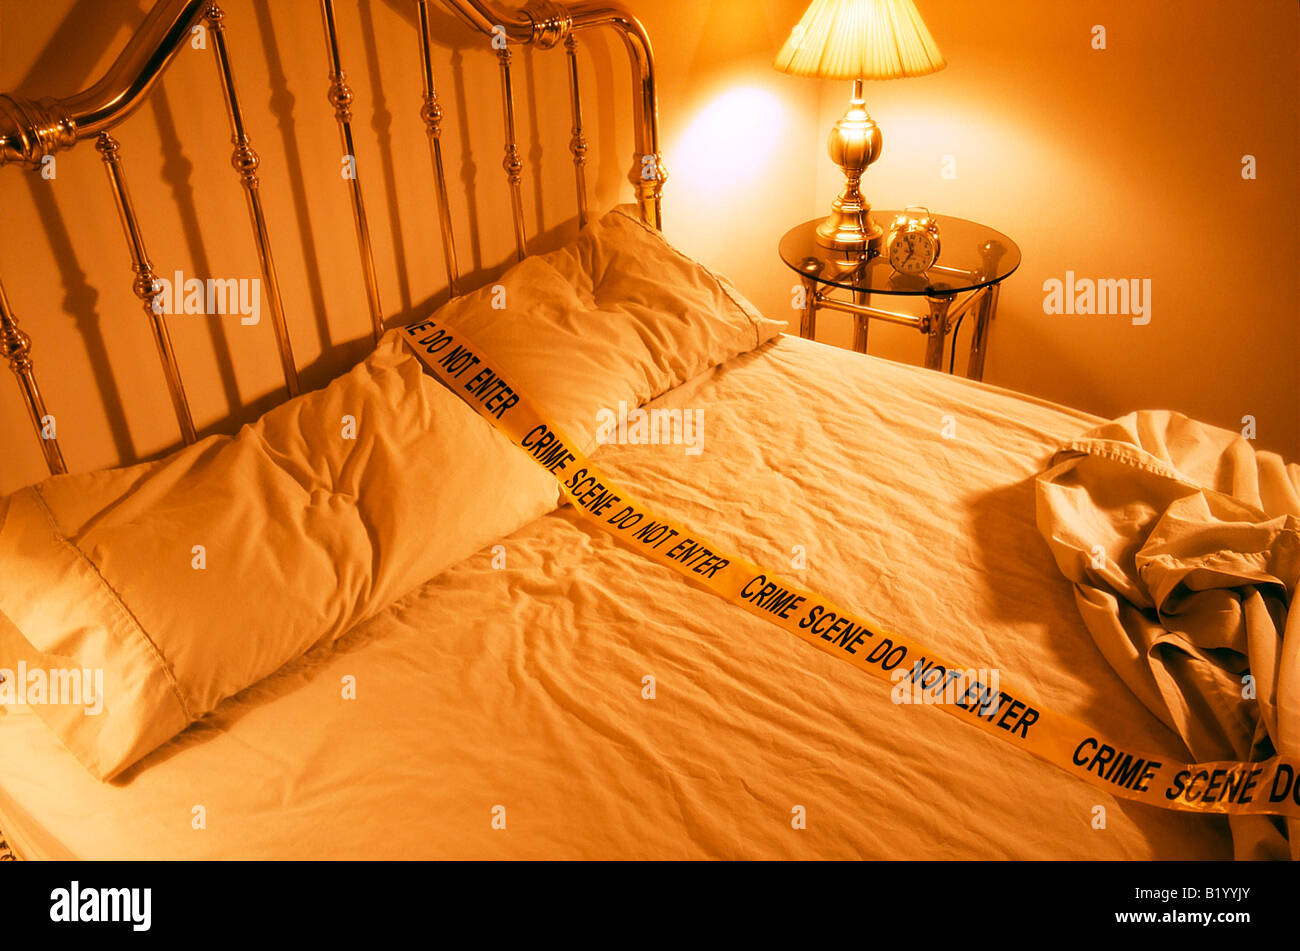 Ungemachten Bett mit Polizei-Verbrechen-Szene-Band Stockfoto